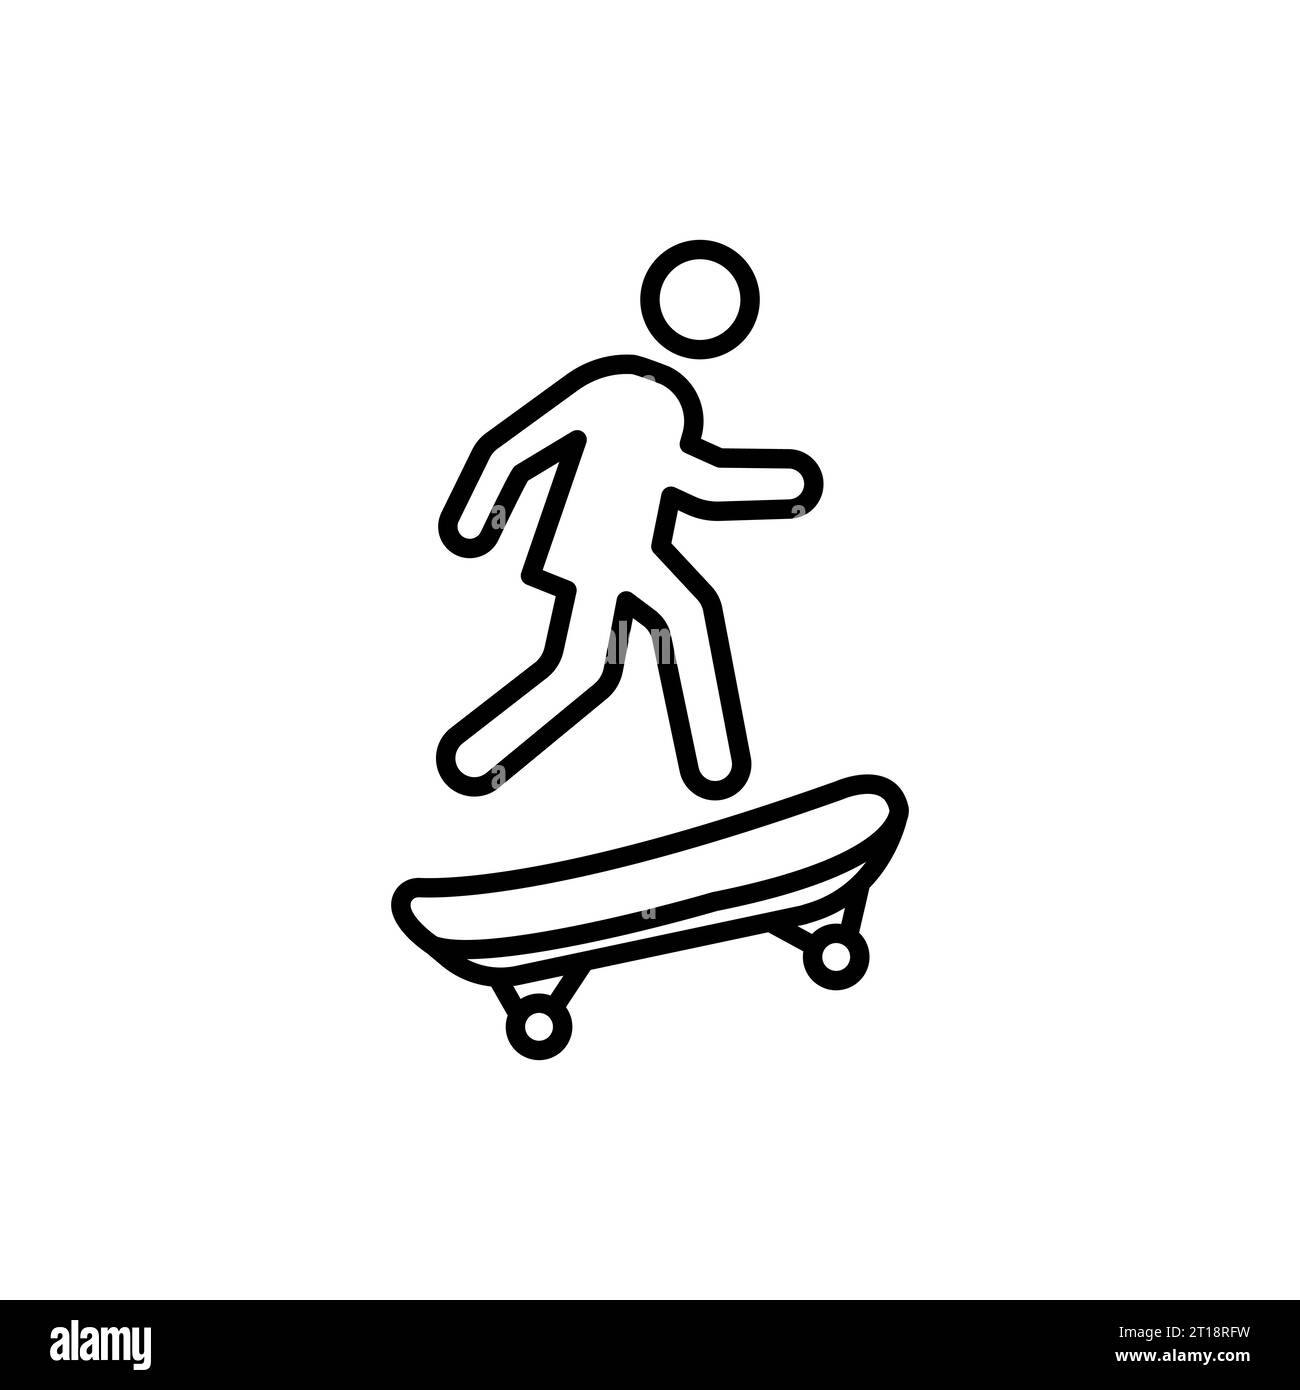 Man riding skateboard icon vector graphics Stock Vector